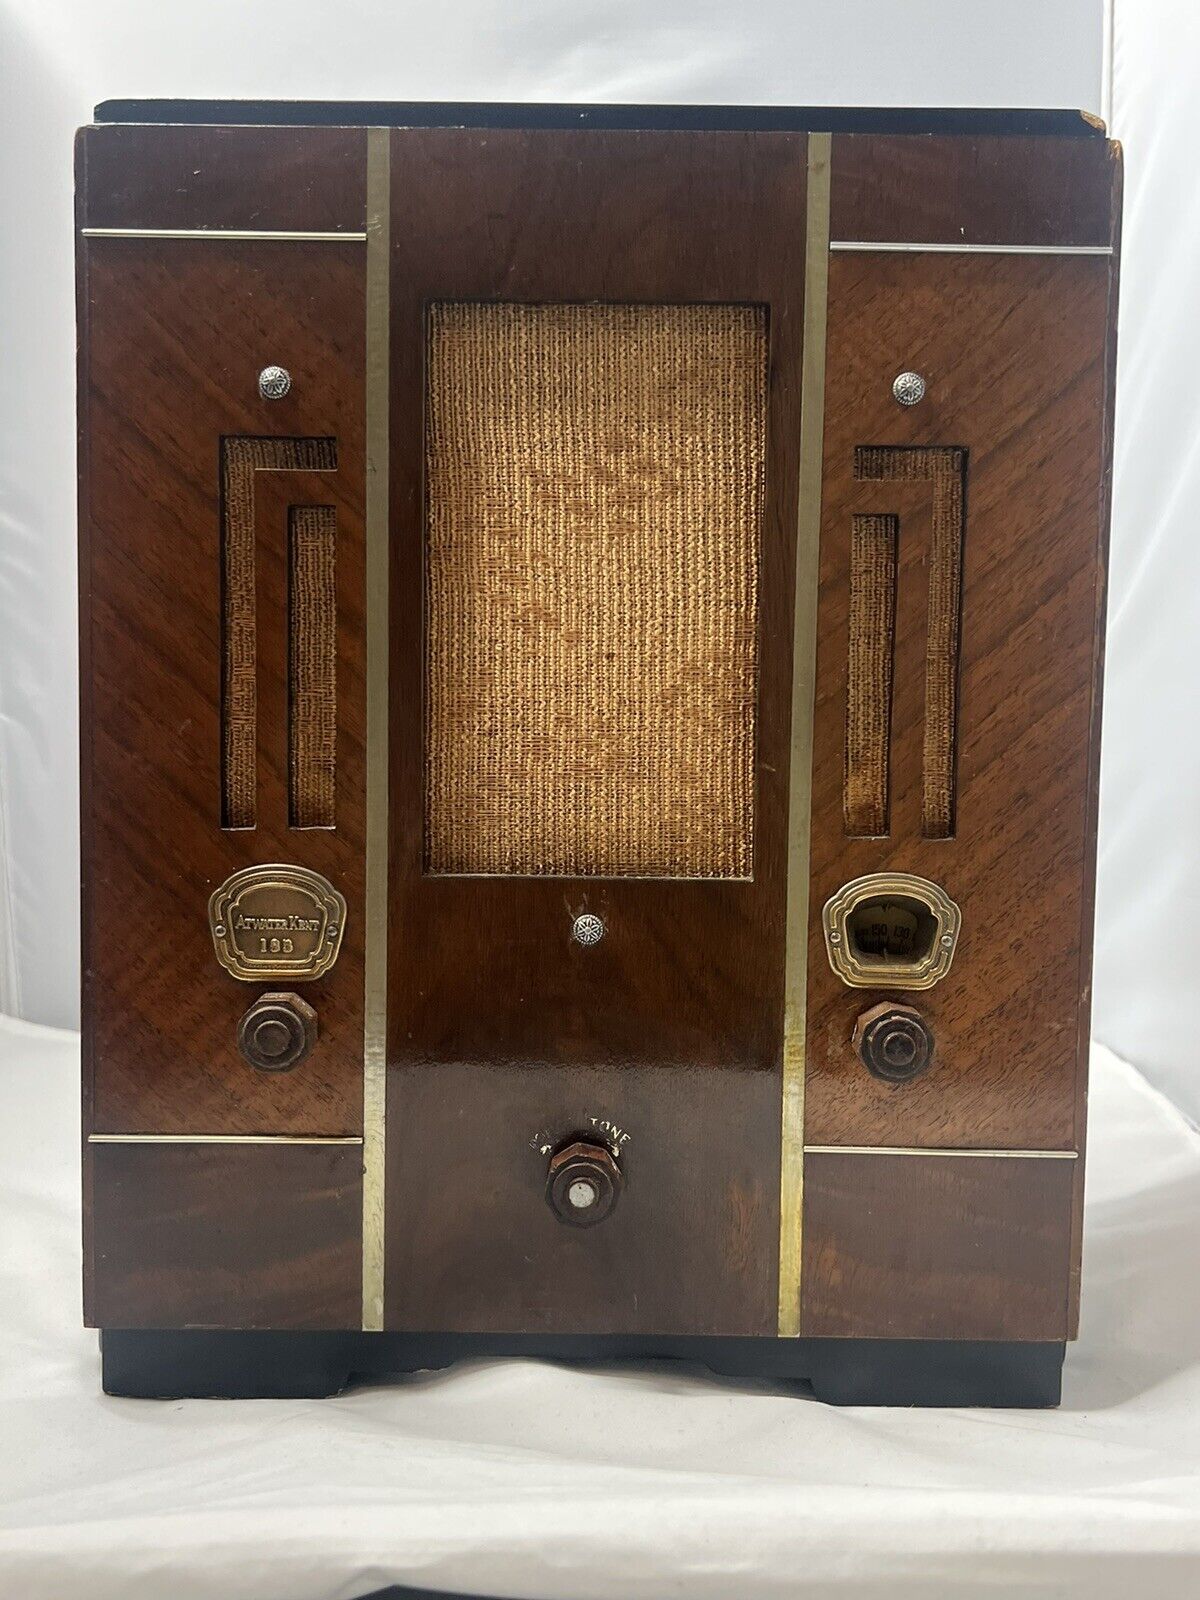 Vintage Atwater Kent Radio Model 185